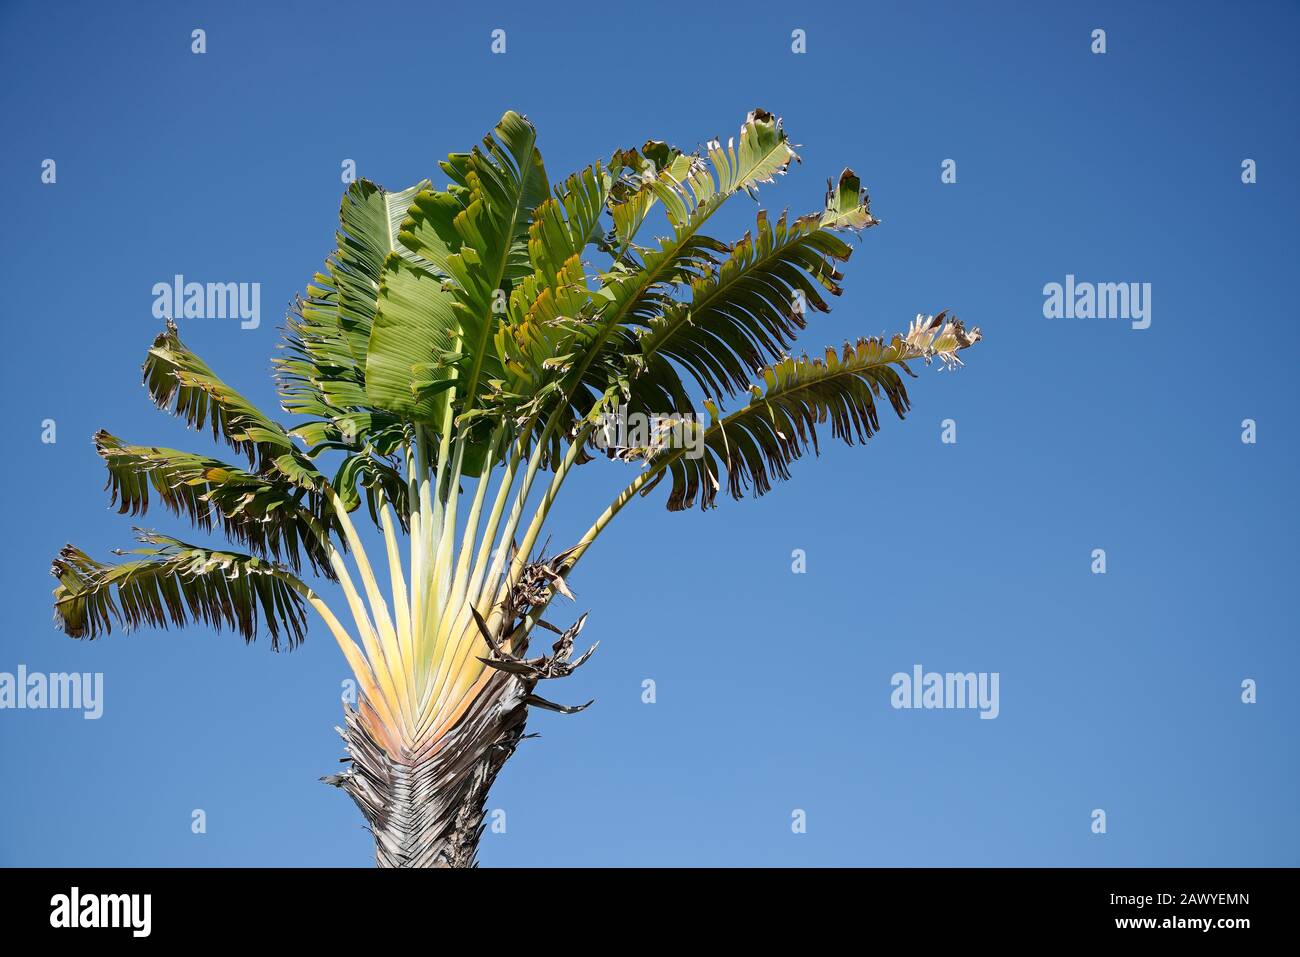 Plantes tropicales. Arbre de voyageur, arbre plat qui ressemble à un arbre de banane traversé par un arbre de palmiers. Banque D'Images